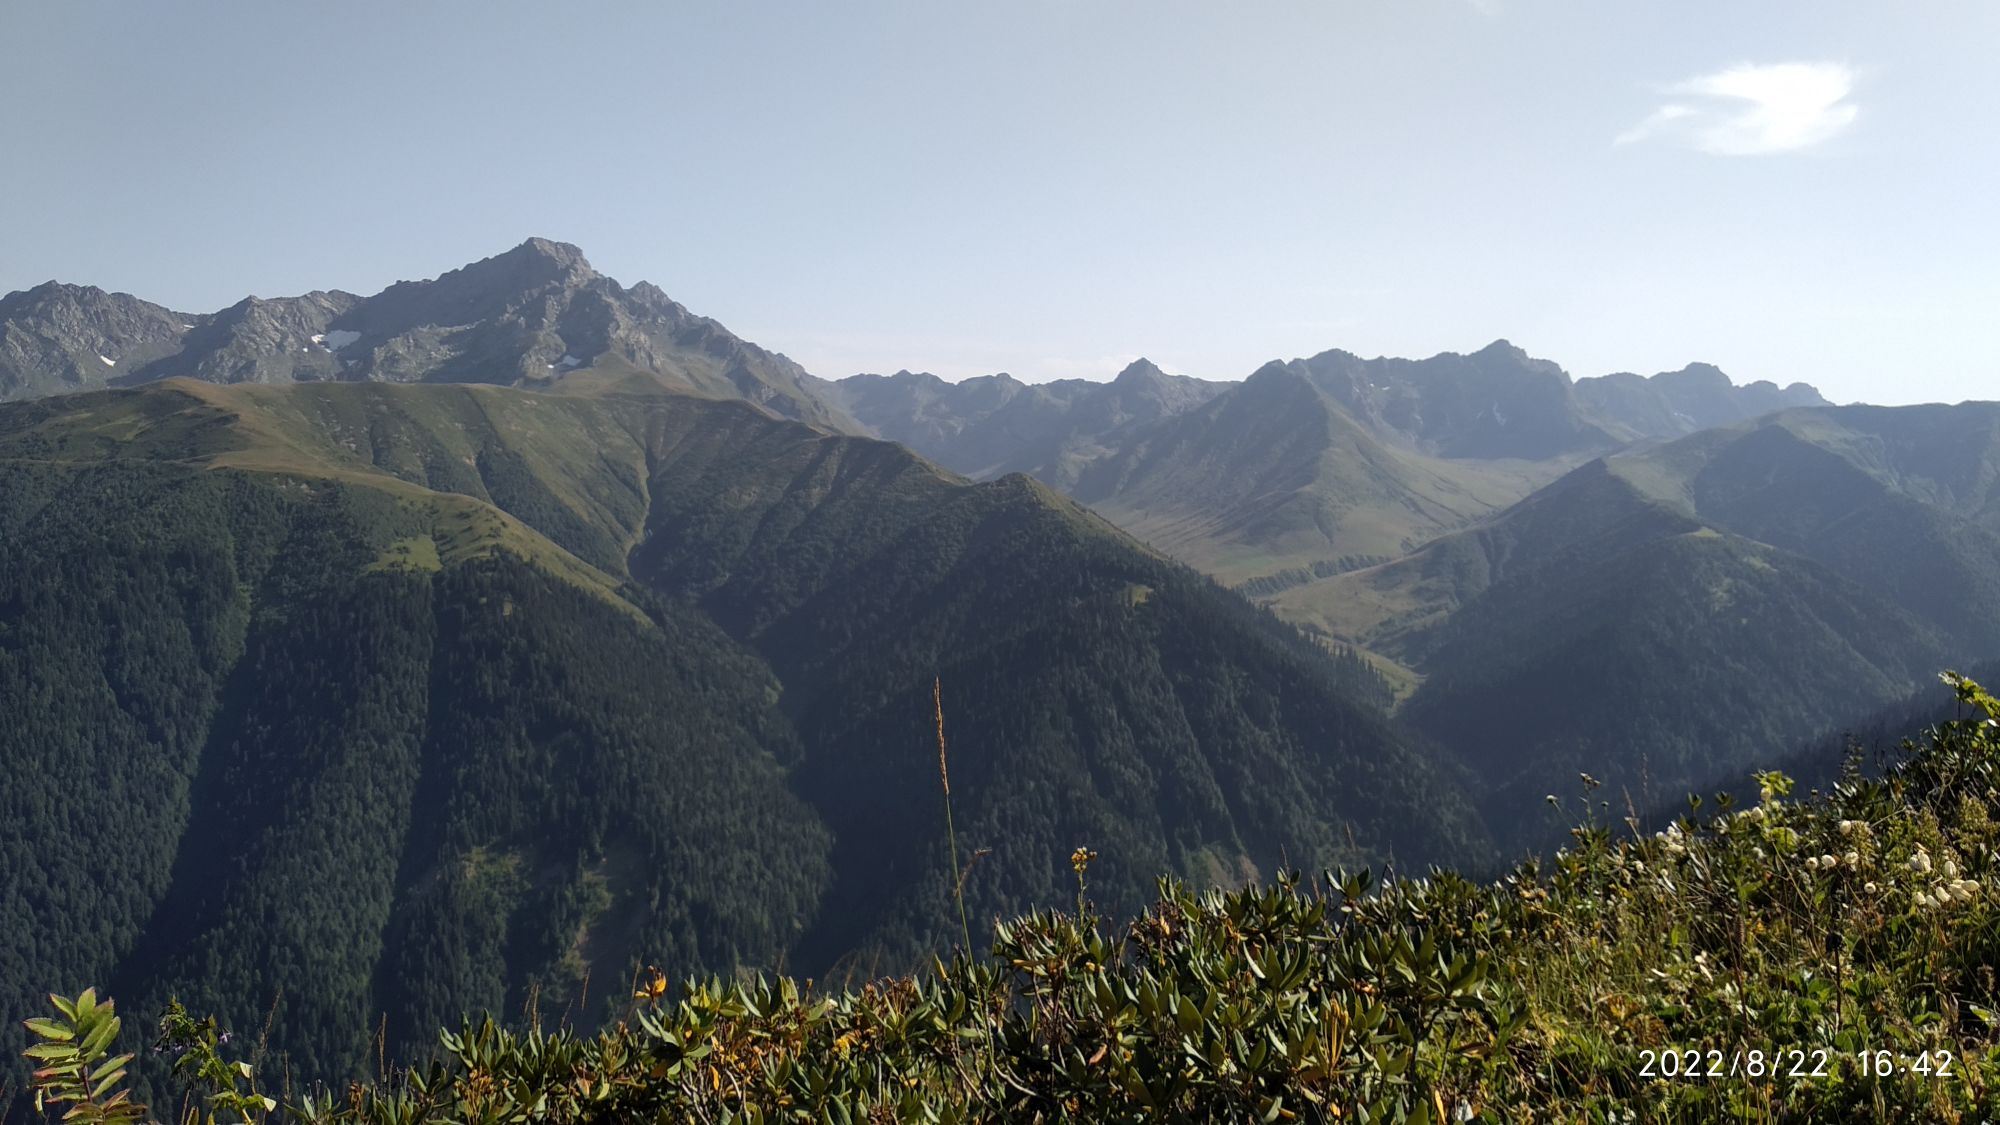 Egrisi range and supposedly Mt.Tsekuri.